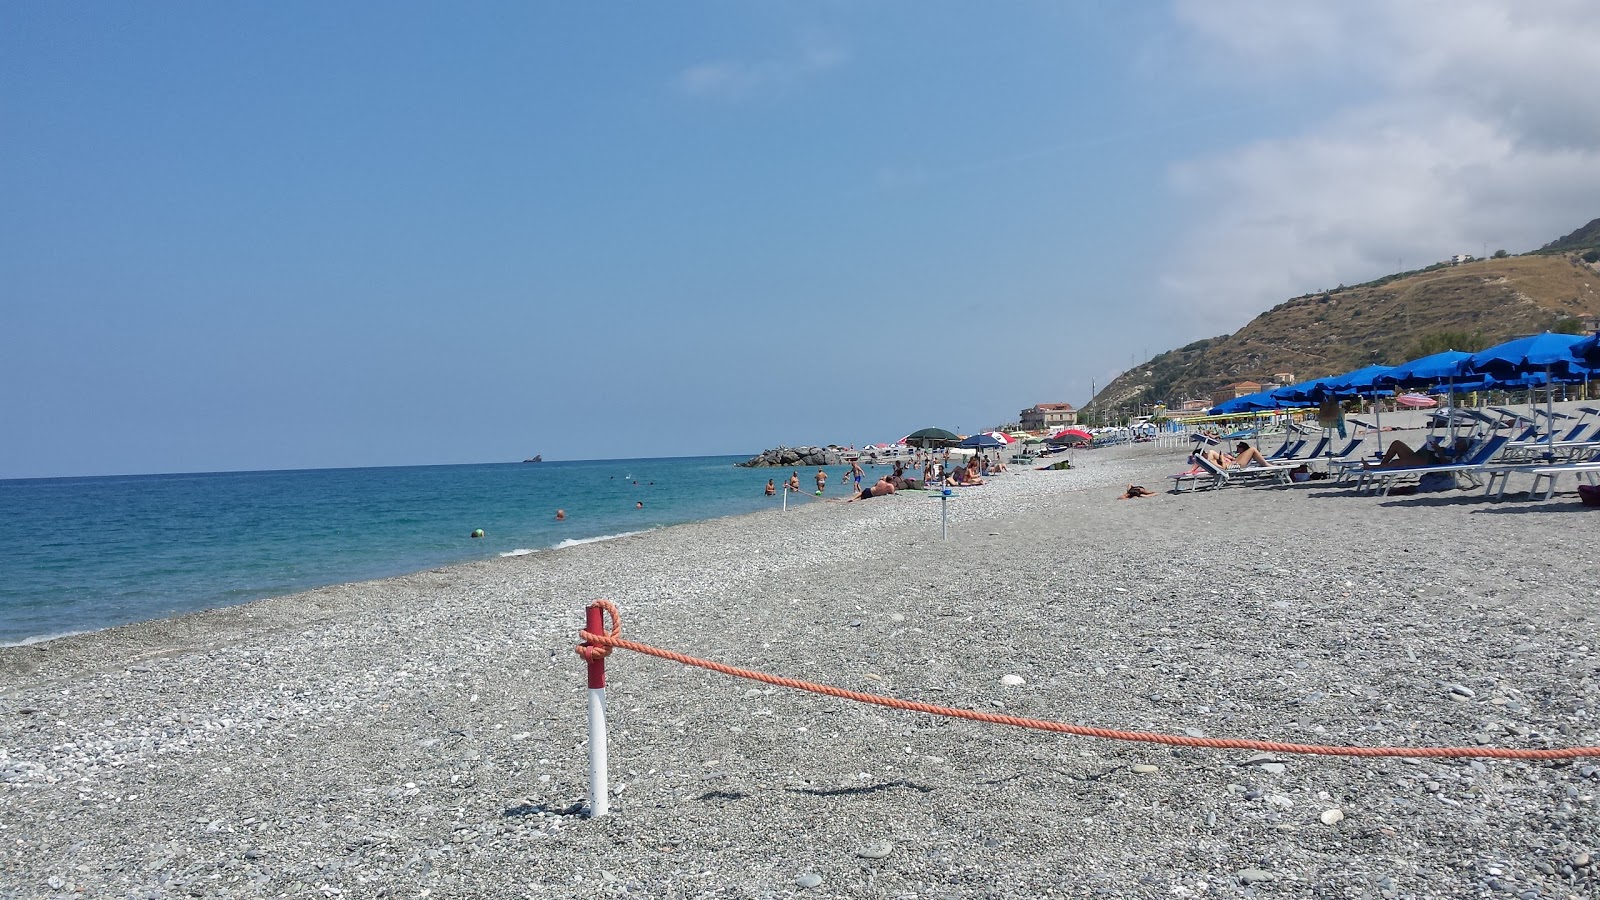 Foto von Spiaggia Amantea mit feiner grauer kies Oberfläche